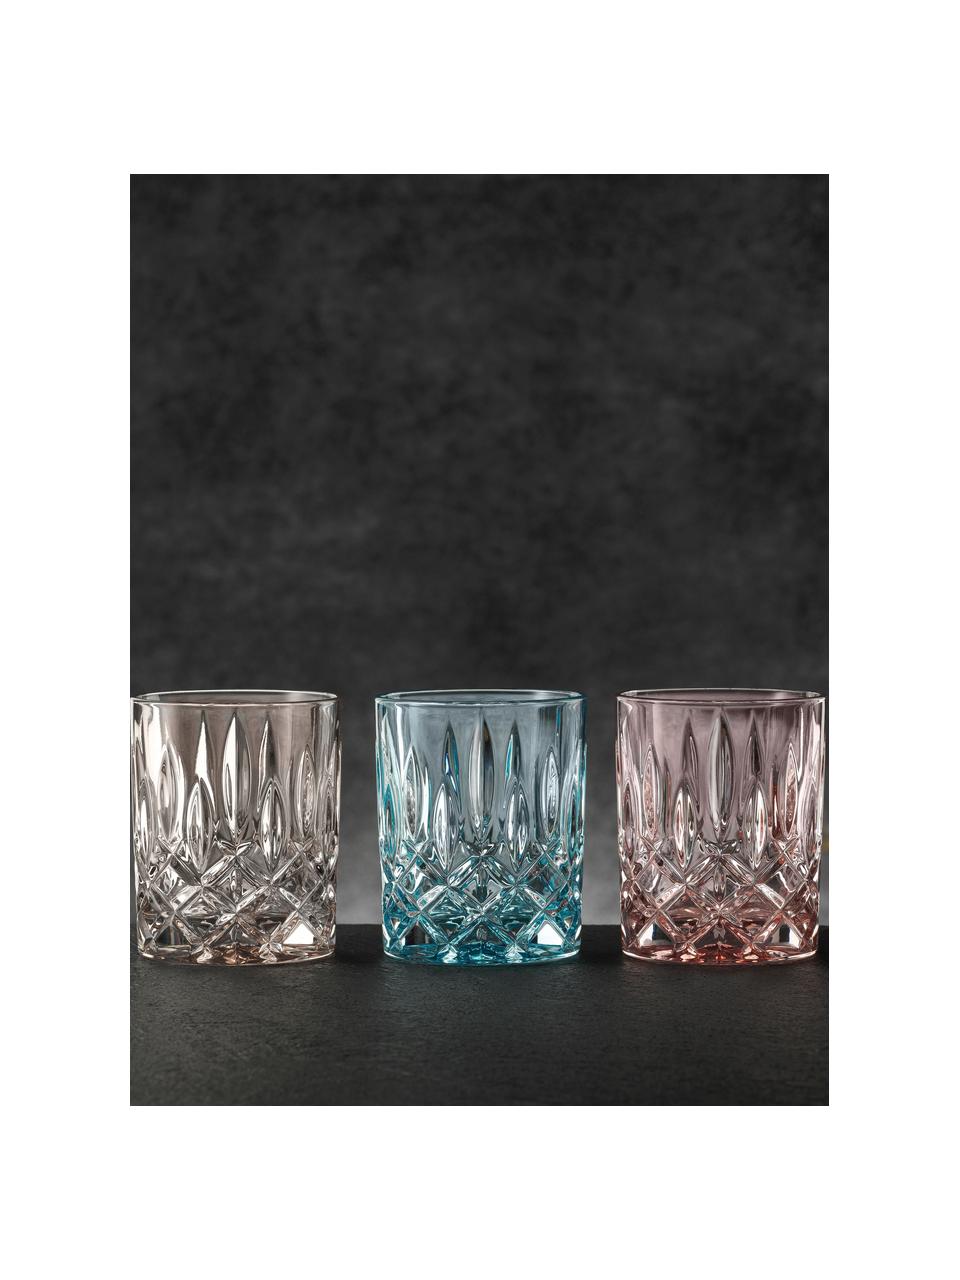 Kristall-Whiskygläser Noblesse, 2 Stück, Kristallglas, Beige, Ø 8 x H 10 cm, 300 ml